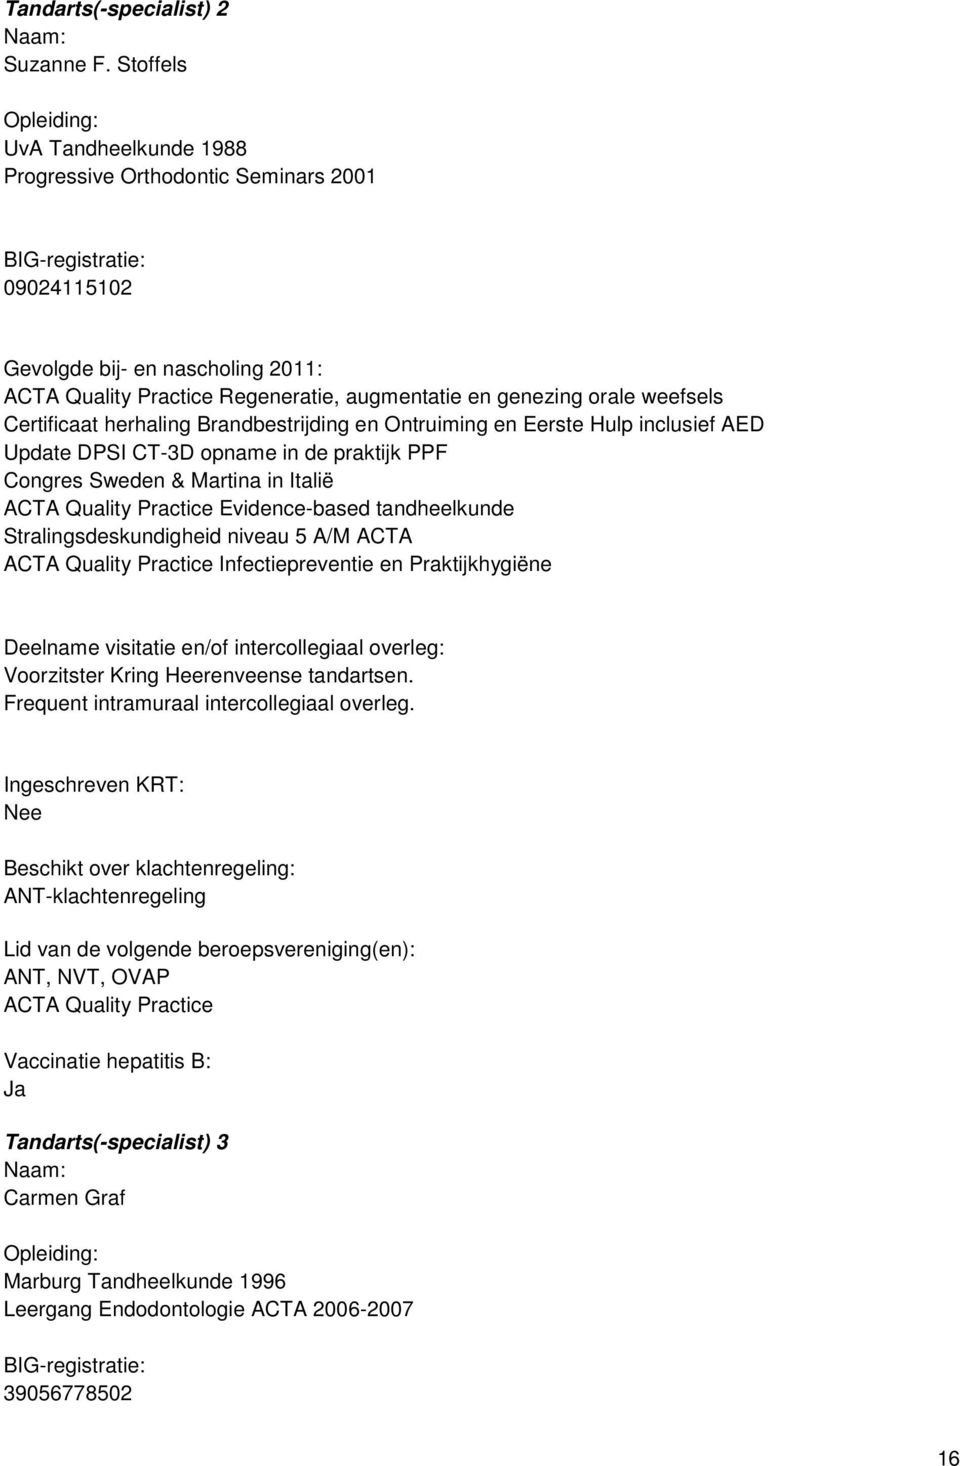 Brandbestrijding en Ontruiming en Eerste Hulp inclusief AED Update DPSI CT-3D opname in de praktijk PPF Congres Sweden & Martina in Italië ACTA Quality Practice Evidence-based tandheelkunde